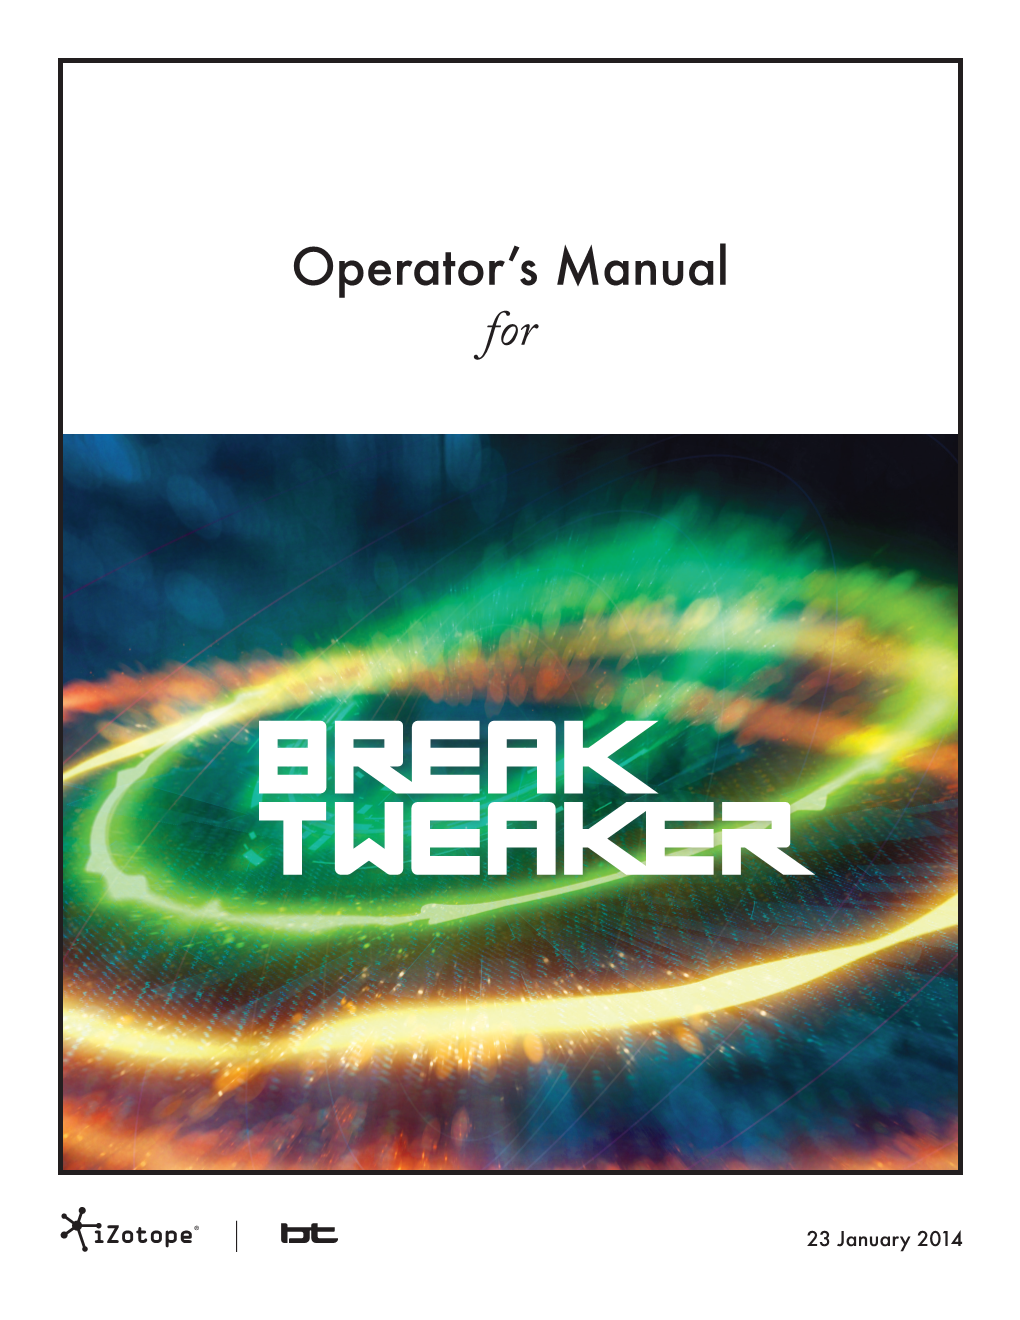 Breaktweaker Help Guide